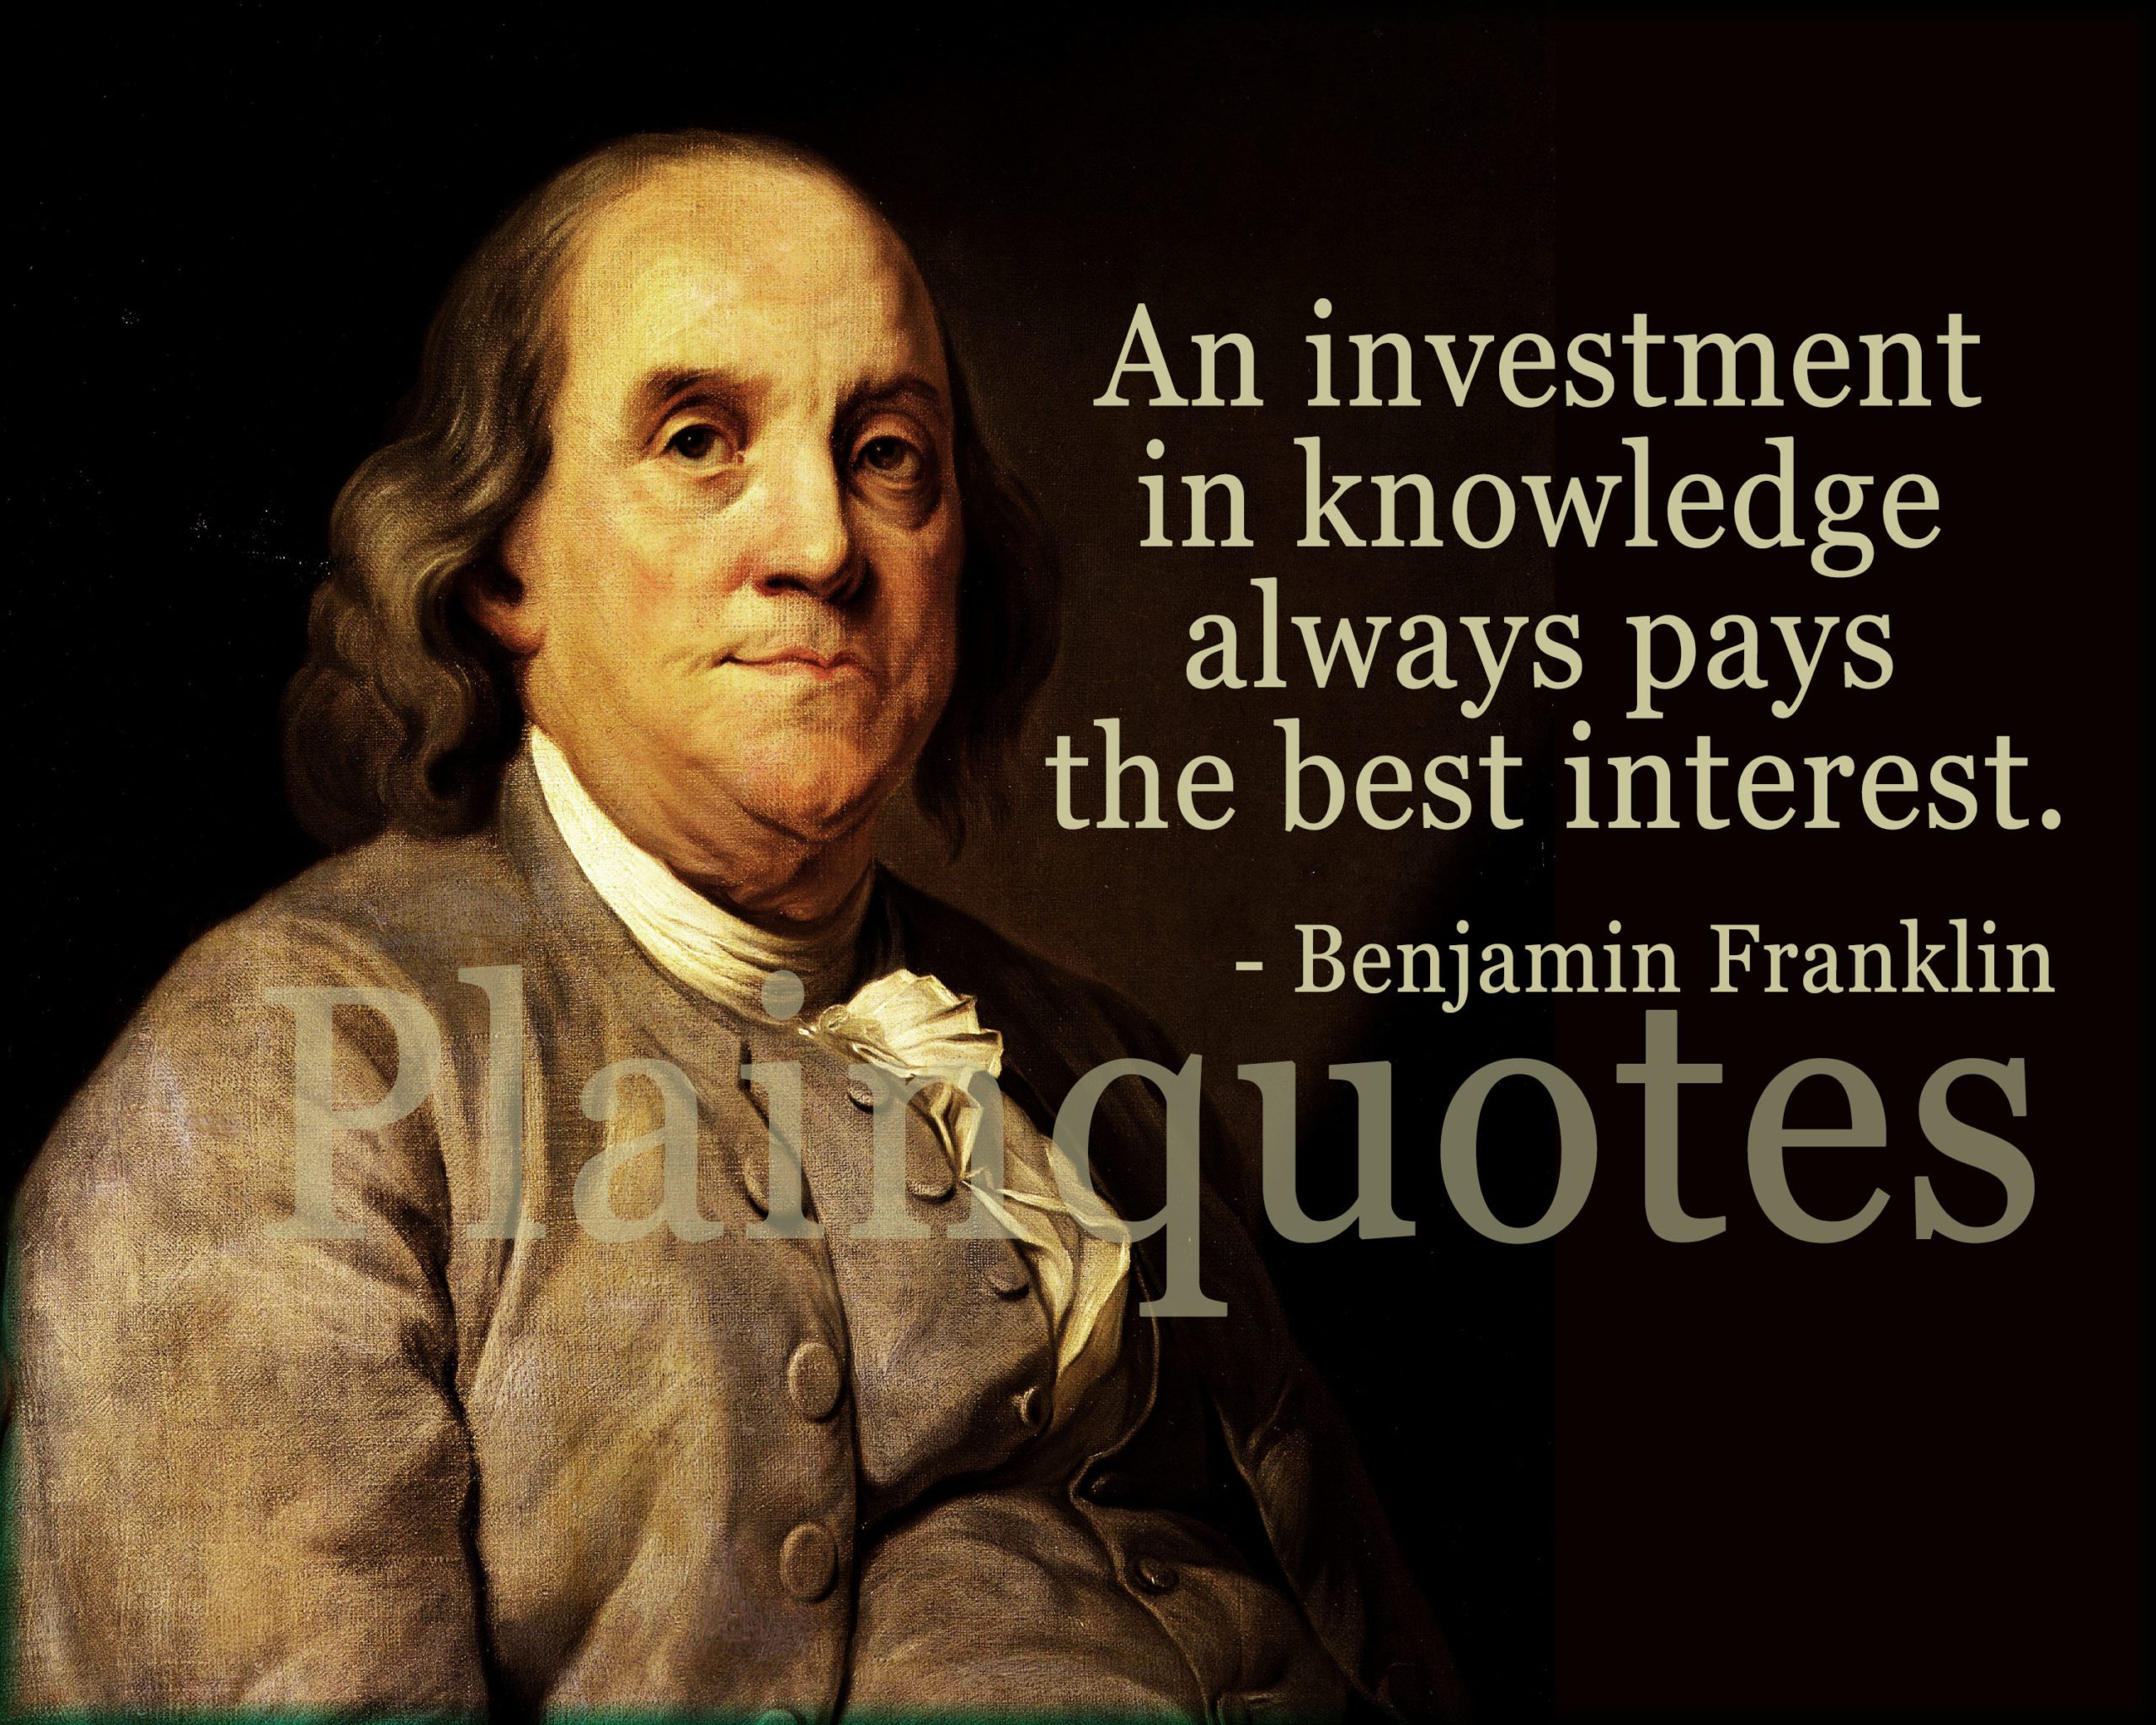 Benjamin Franklin Quote - Plainquotes